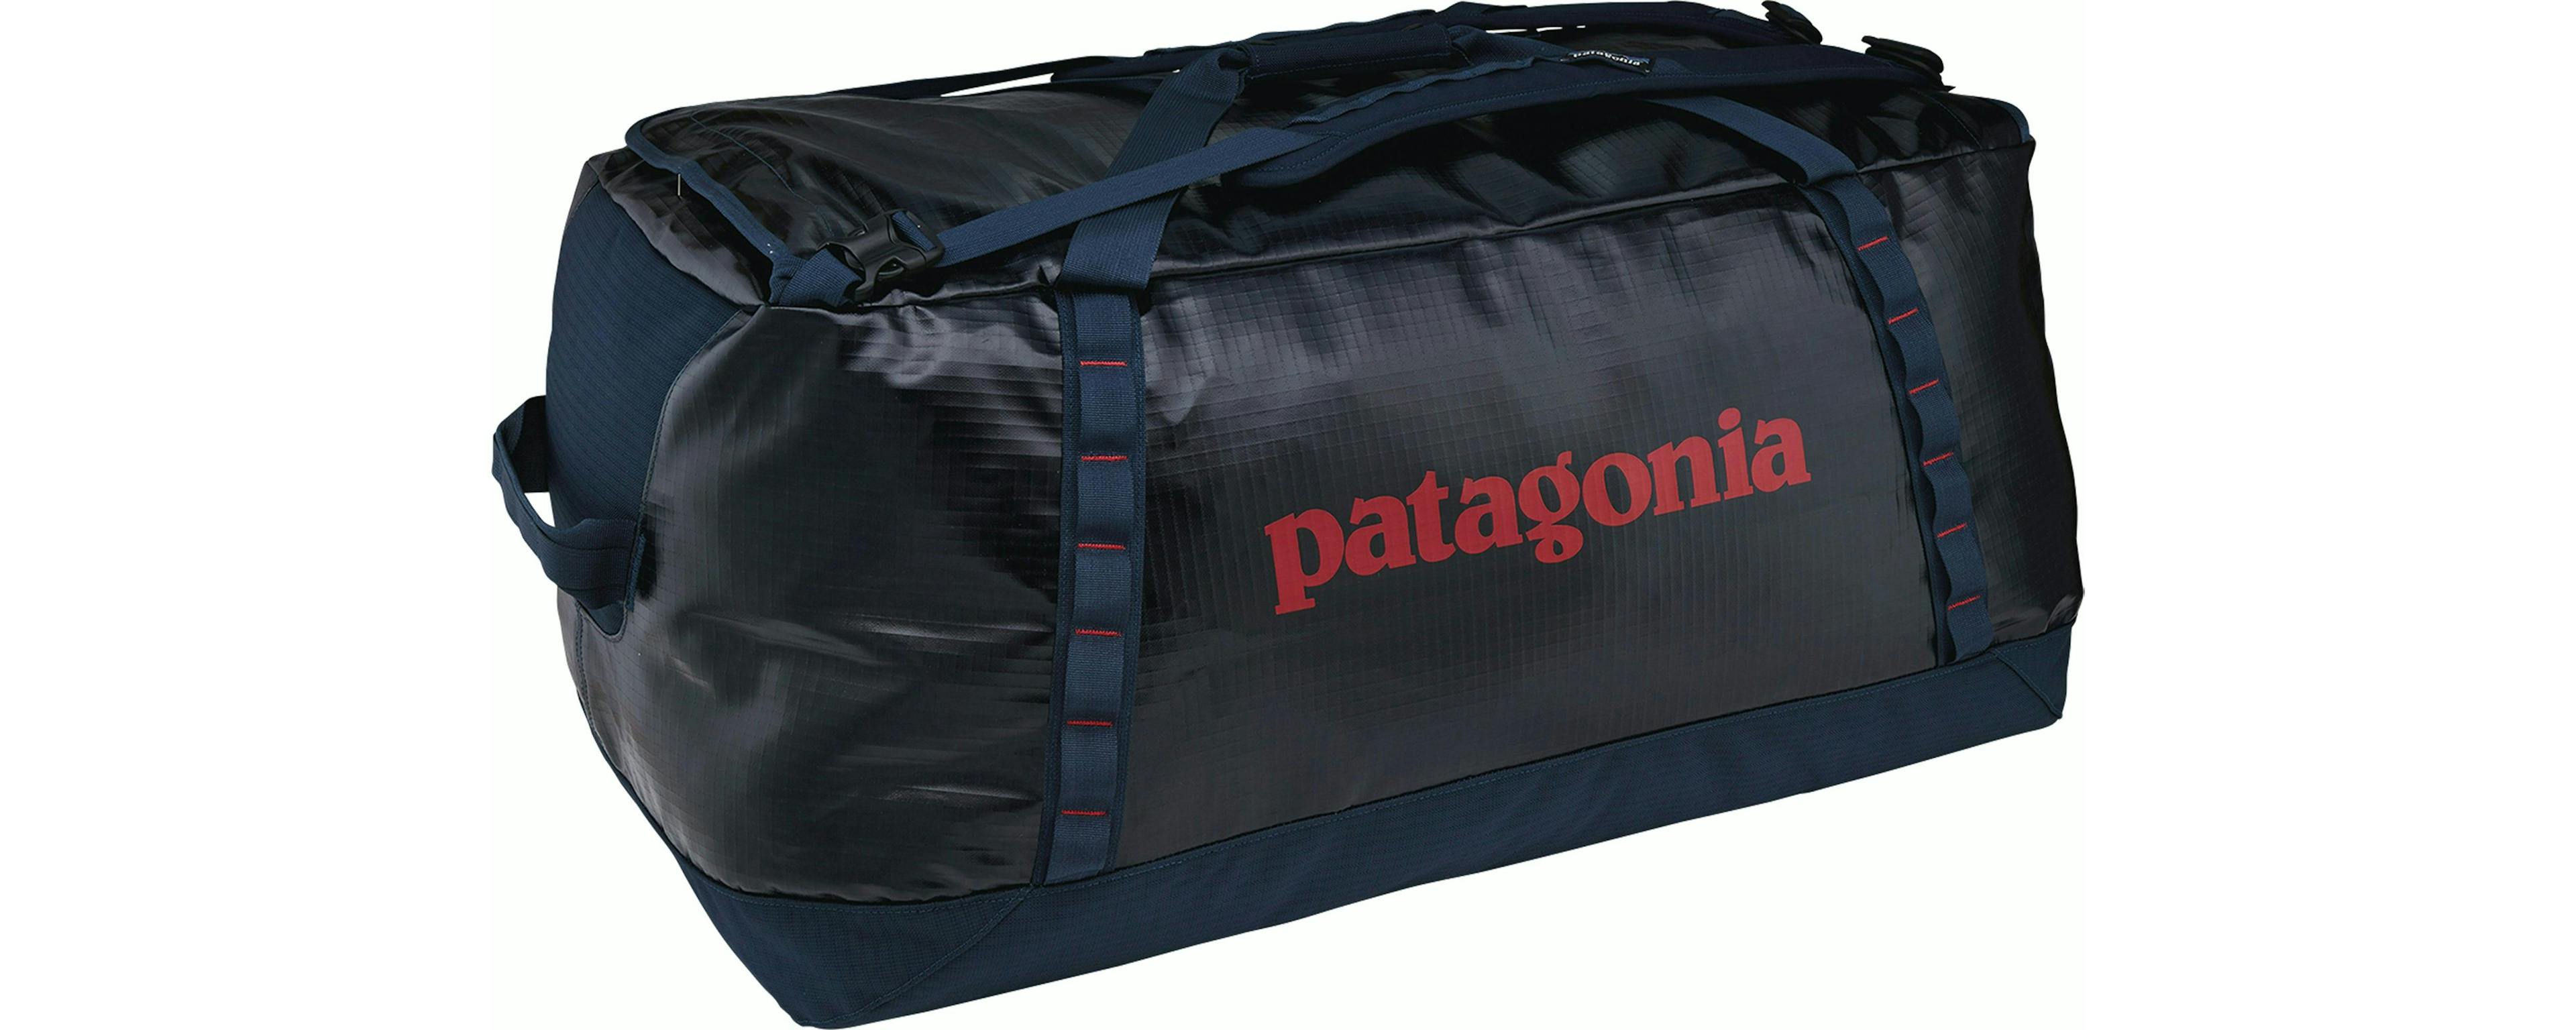 Black duffle bag from Patagonia